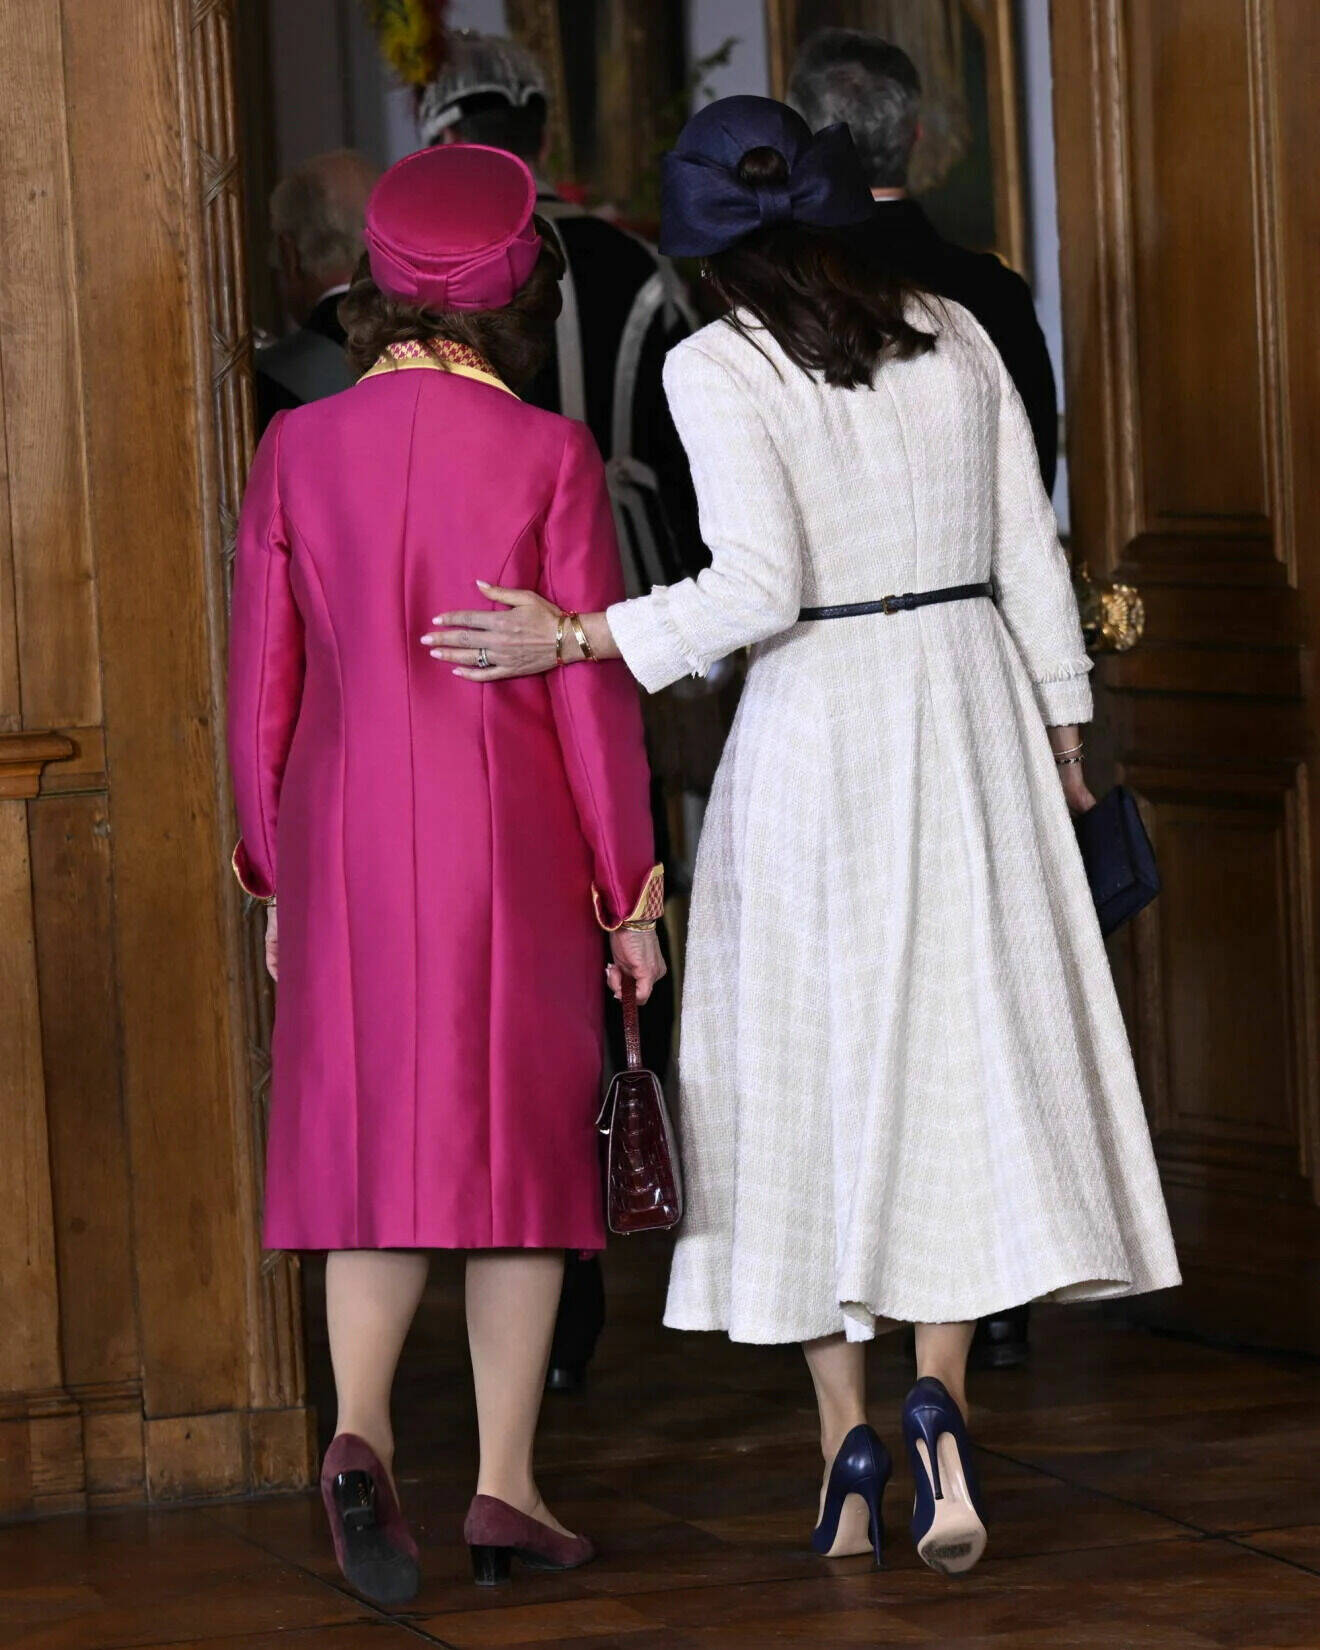 Drottning Silvia och drottning Mary fotade bakifrån